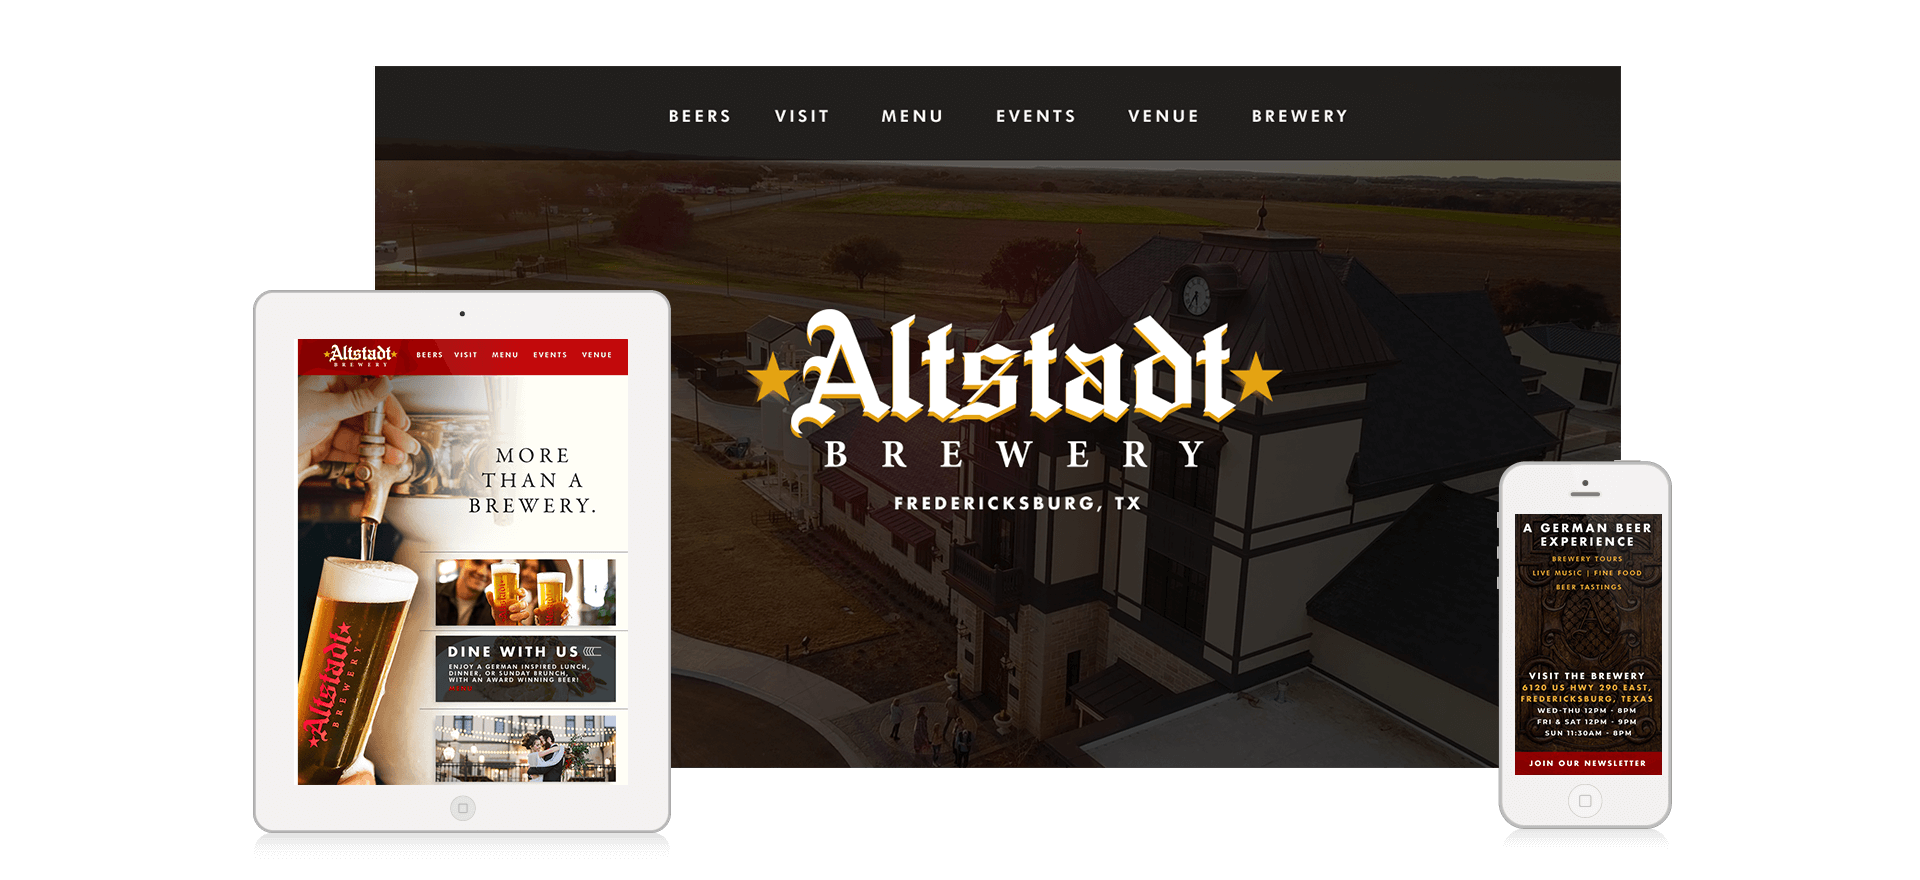 Altstadt brewery Fredericksburg website design